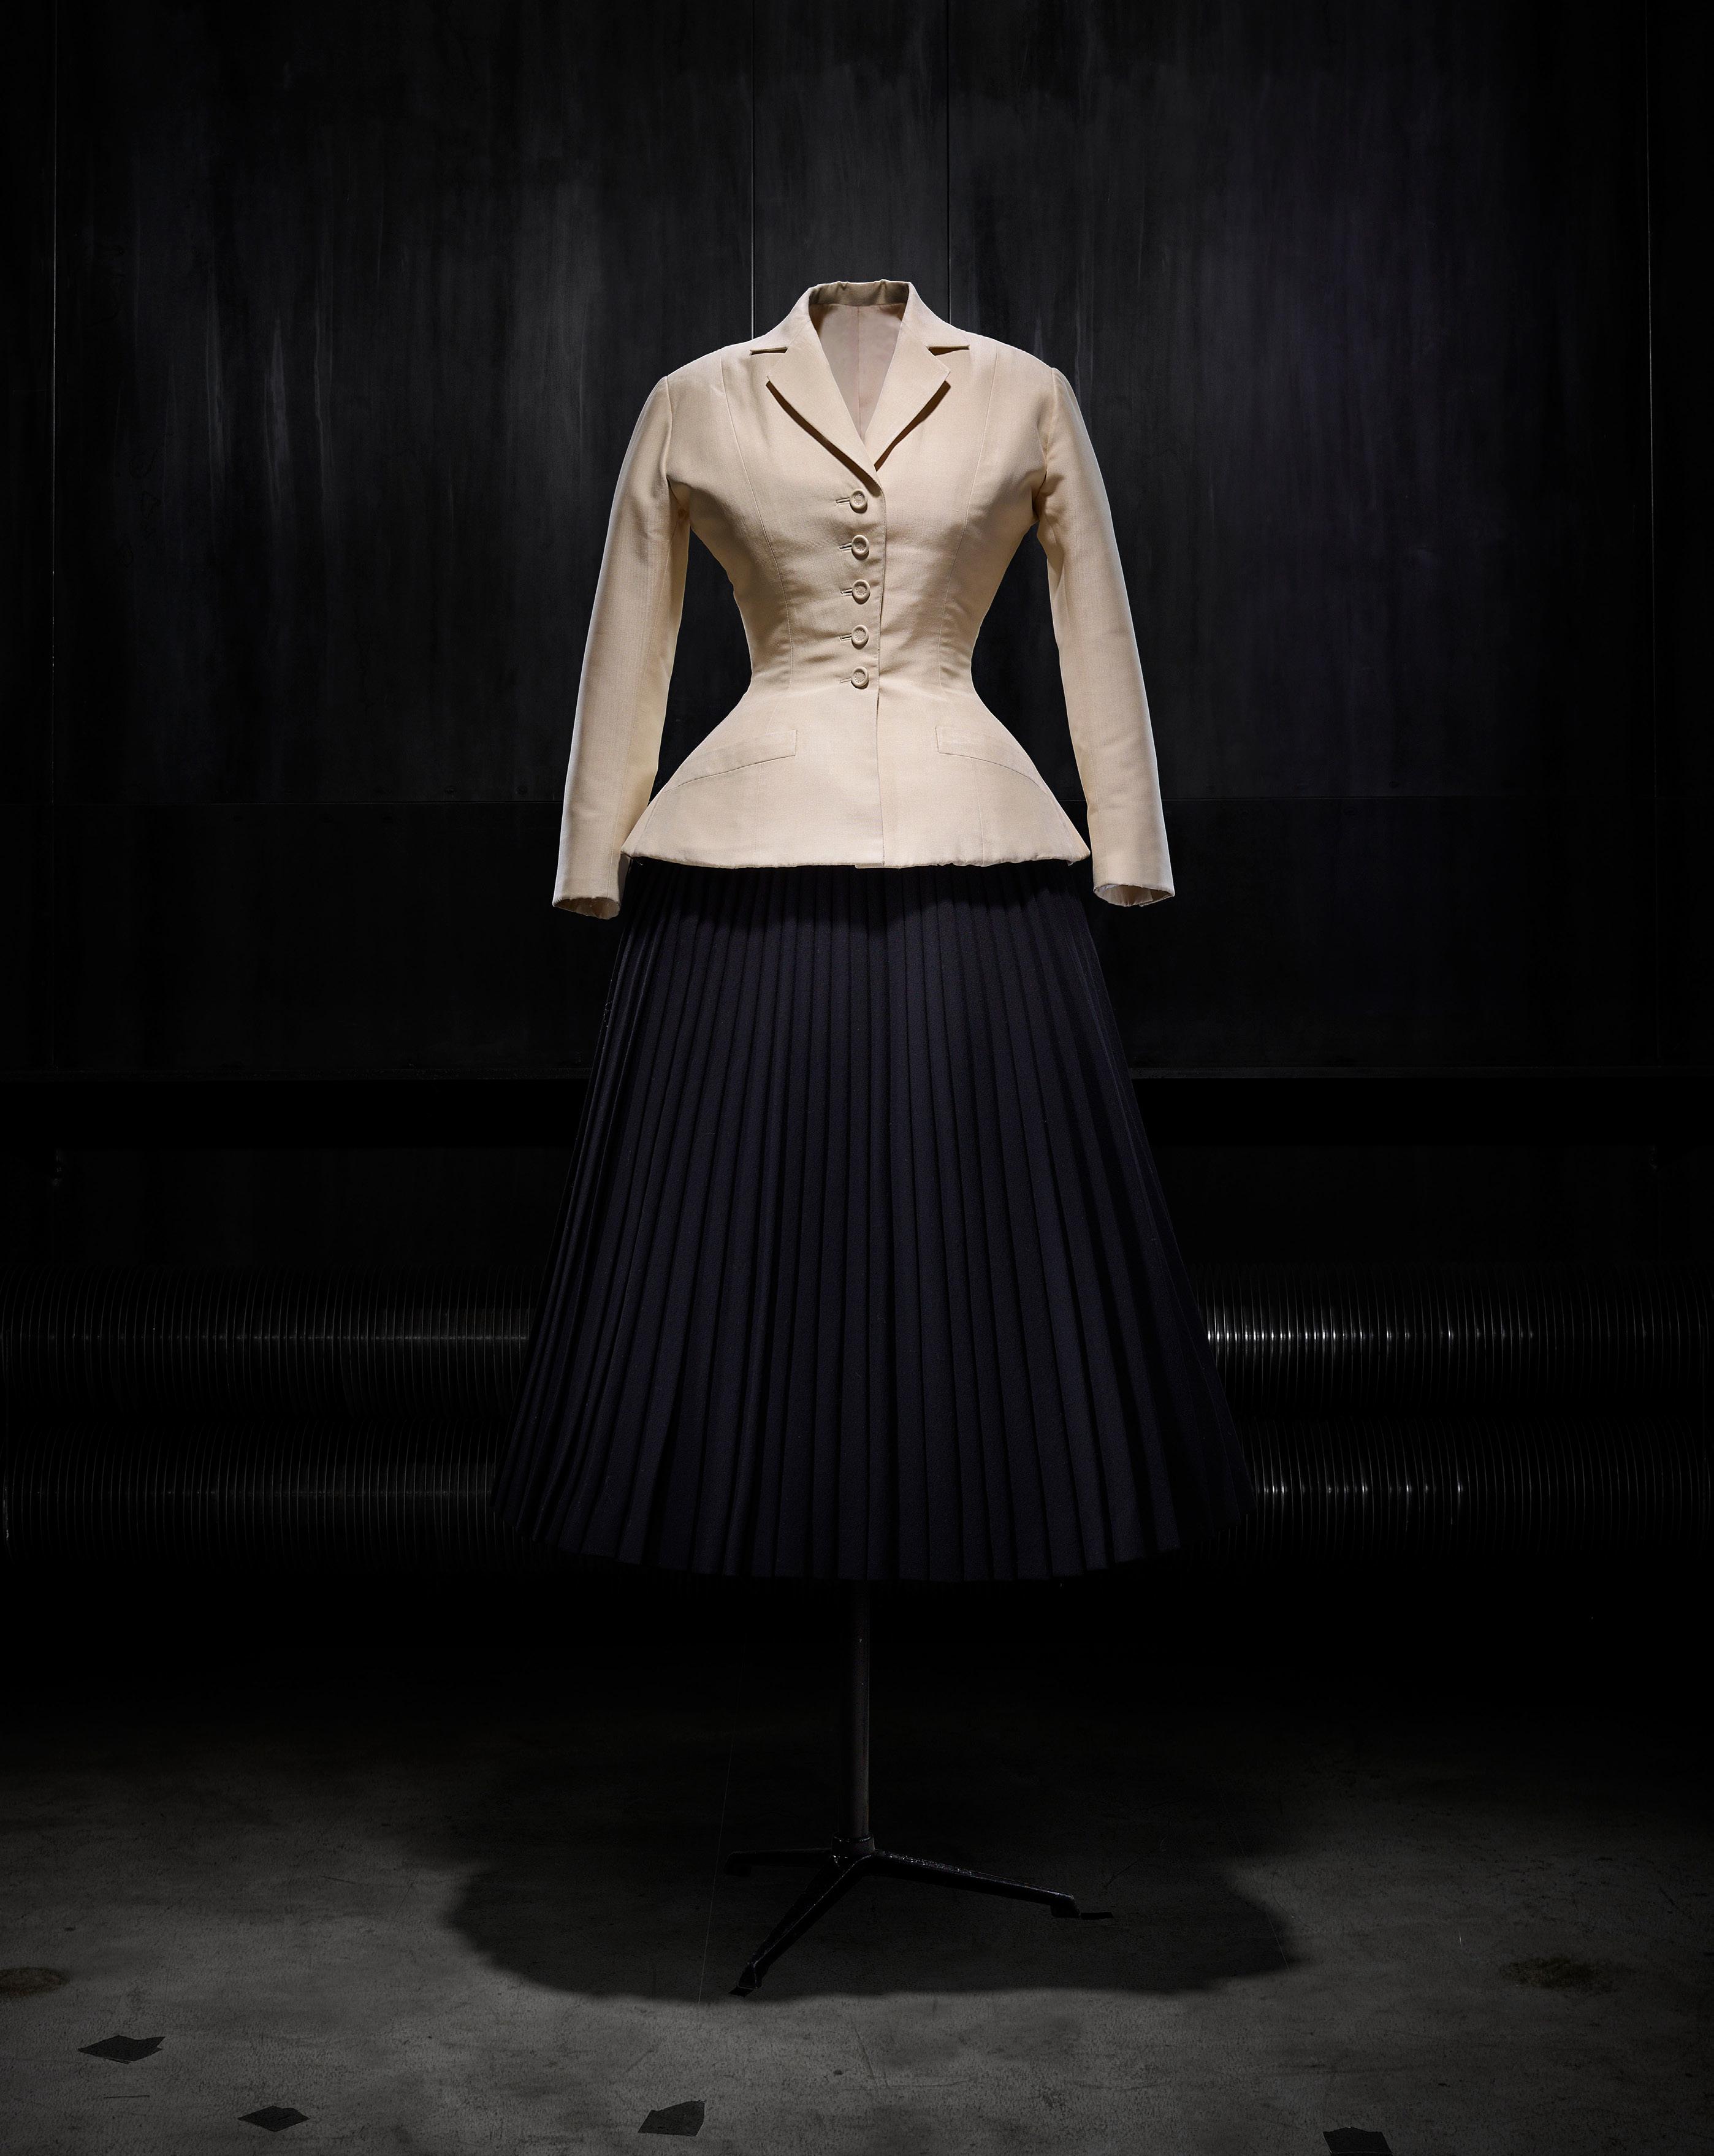 Il tailleur Bar realizzato nel 1947 da Christian Dior e composto da una giacca in shantung naturale e da una gonna a corolla plissettata di lana nera, collezione di haute couture printemps-été 1947, linea Corolle.